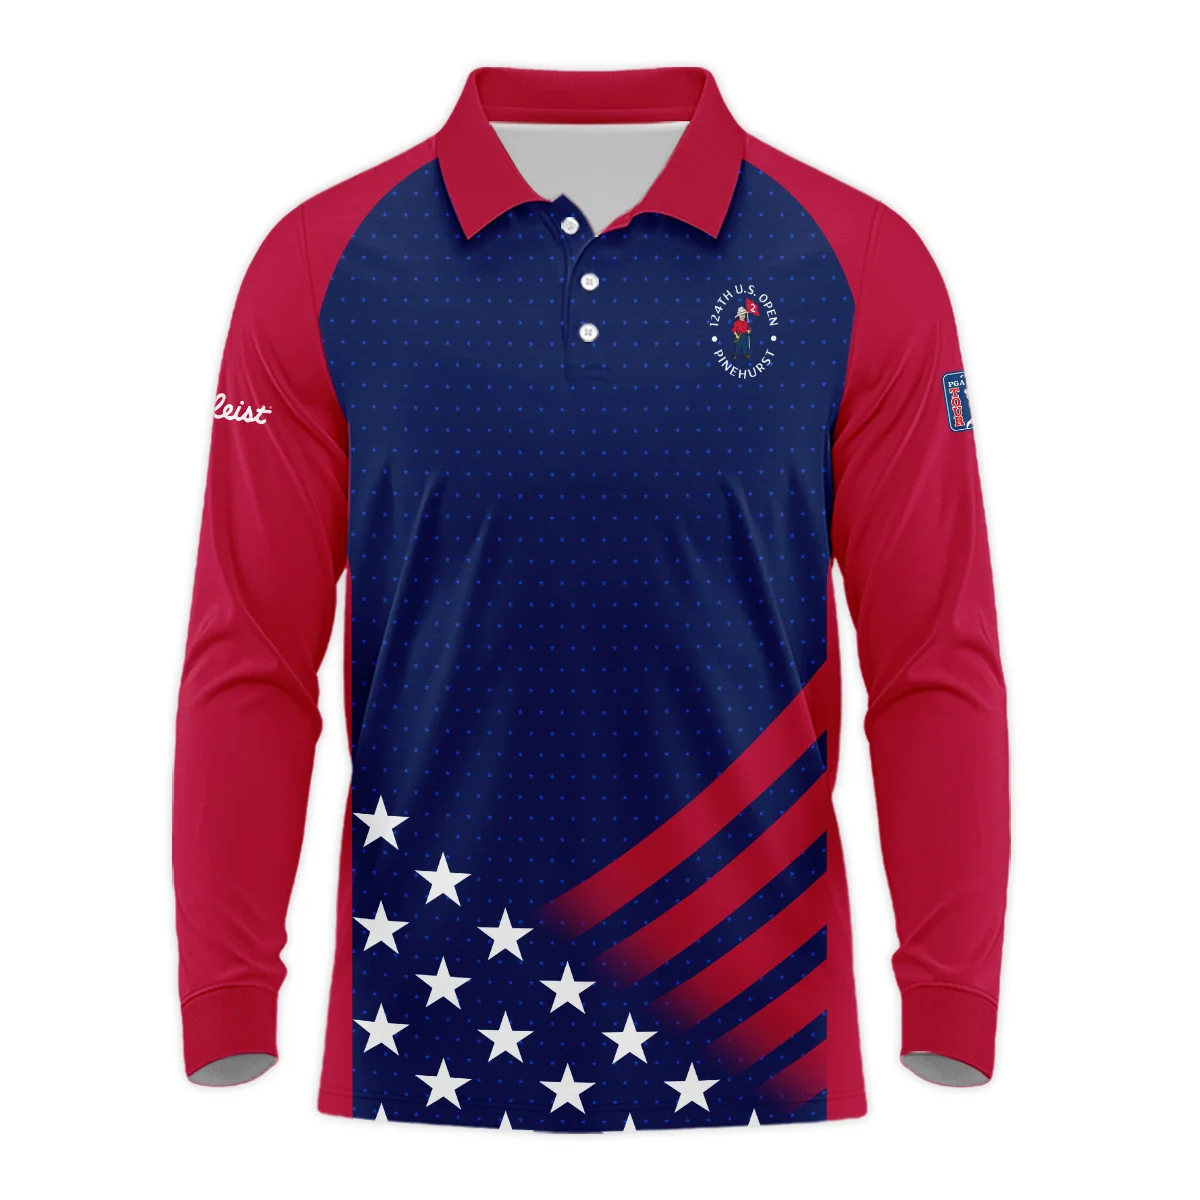 Titleist 124th U.S. Open Pinehurst Star White Dark Blue Red Background Unisex Sweatshirt Style Classic Sweatshirt